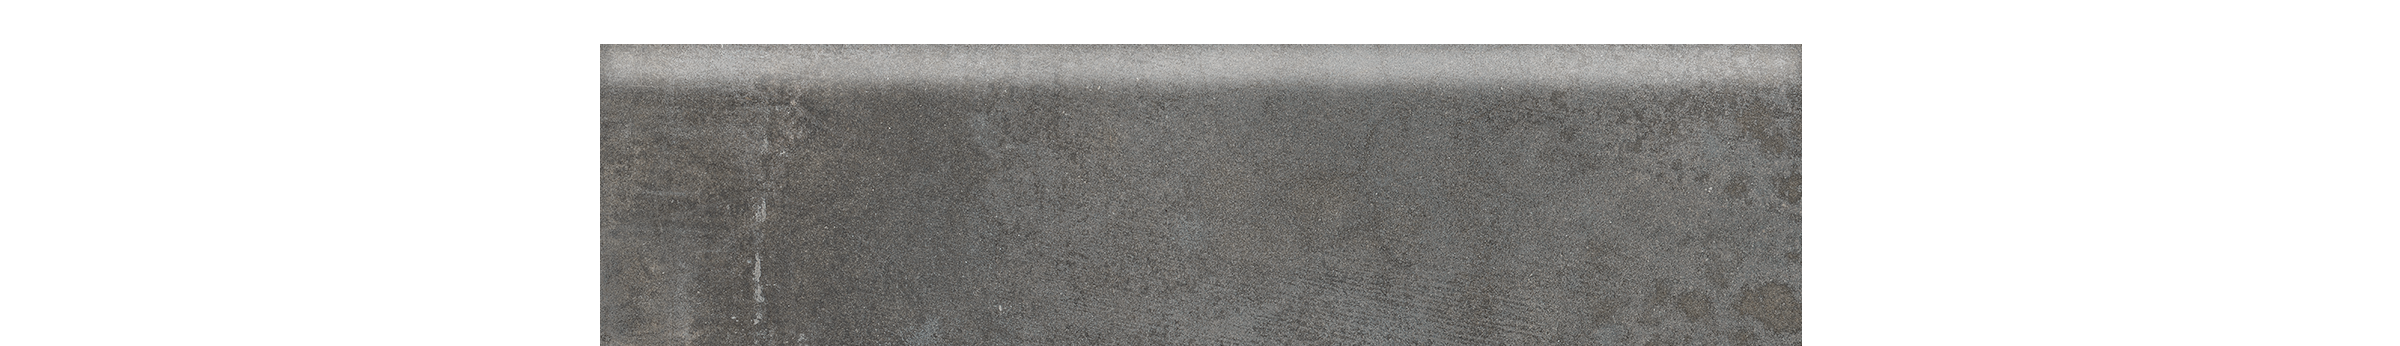 Cementello 4x16 Matte or Polished Dark Gray Bullnose